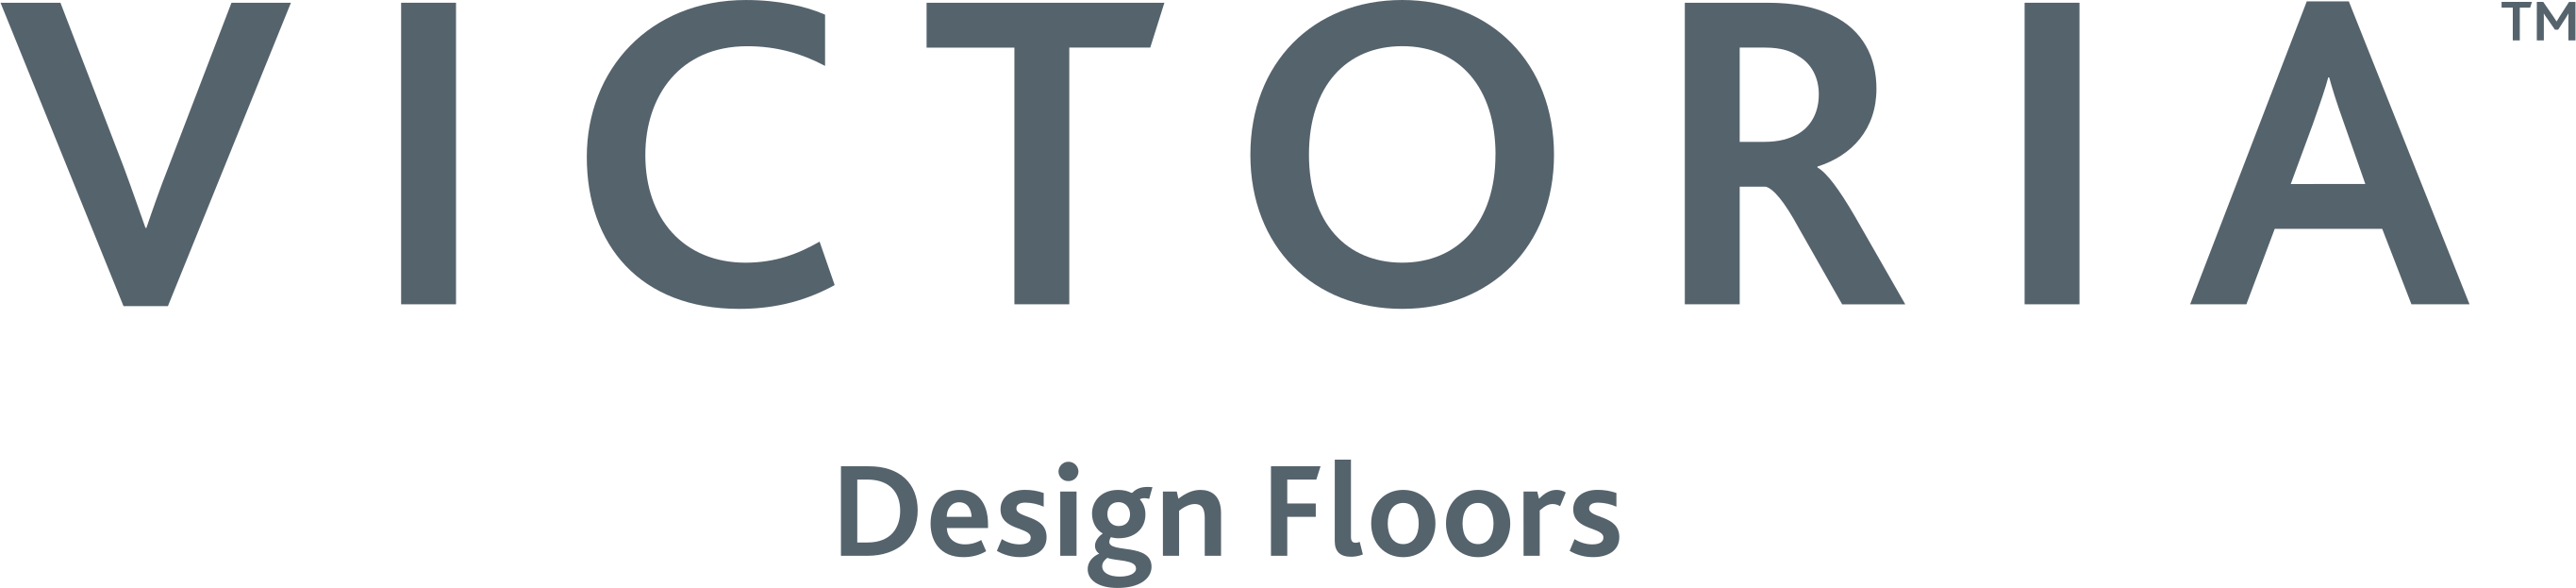 Victoria designed floors logo